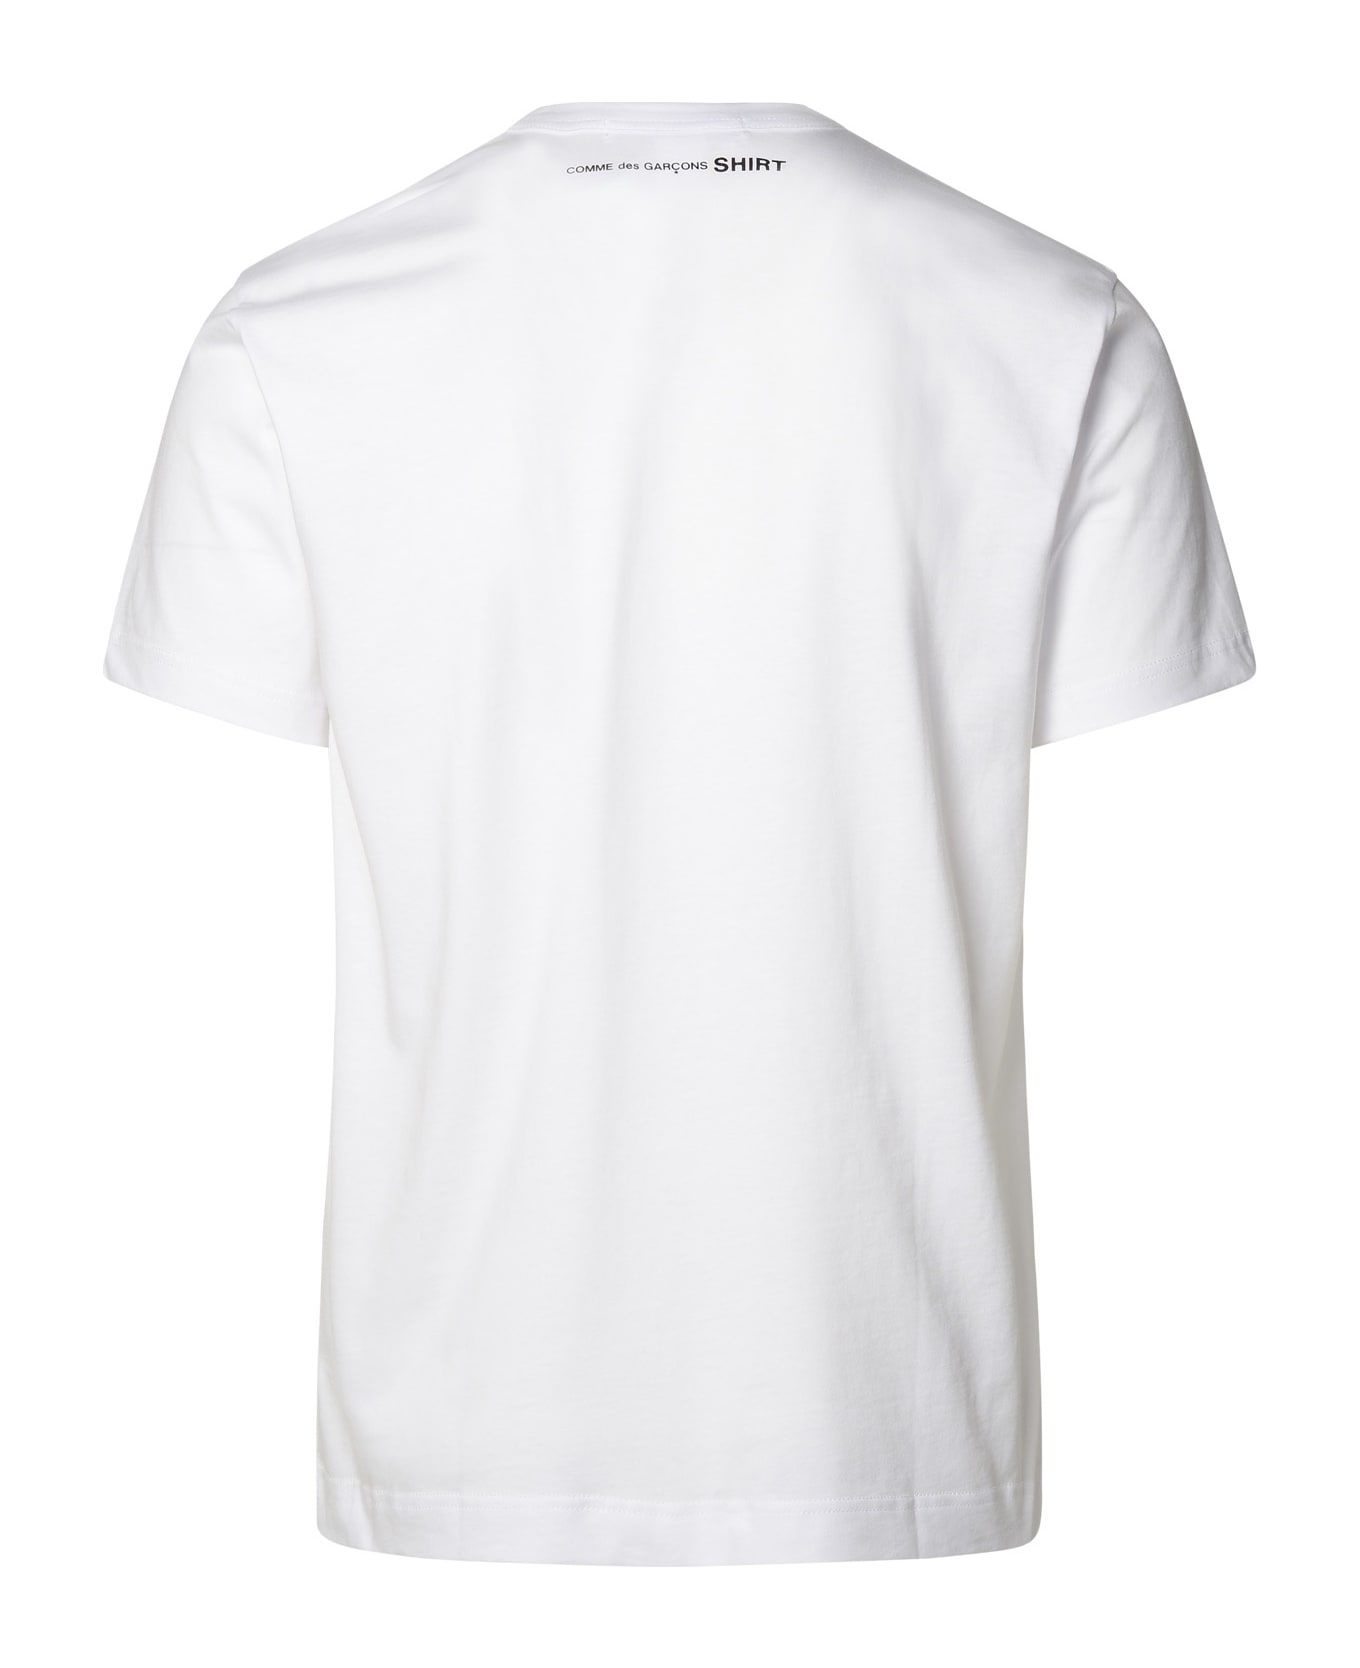 Comme des Garçons Shirt White Cotton T-shirt - White